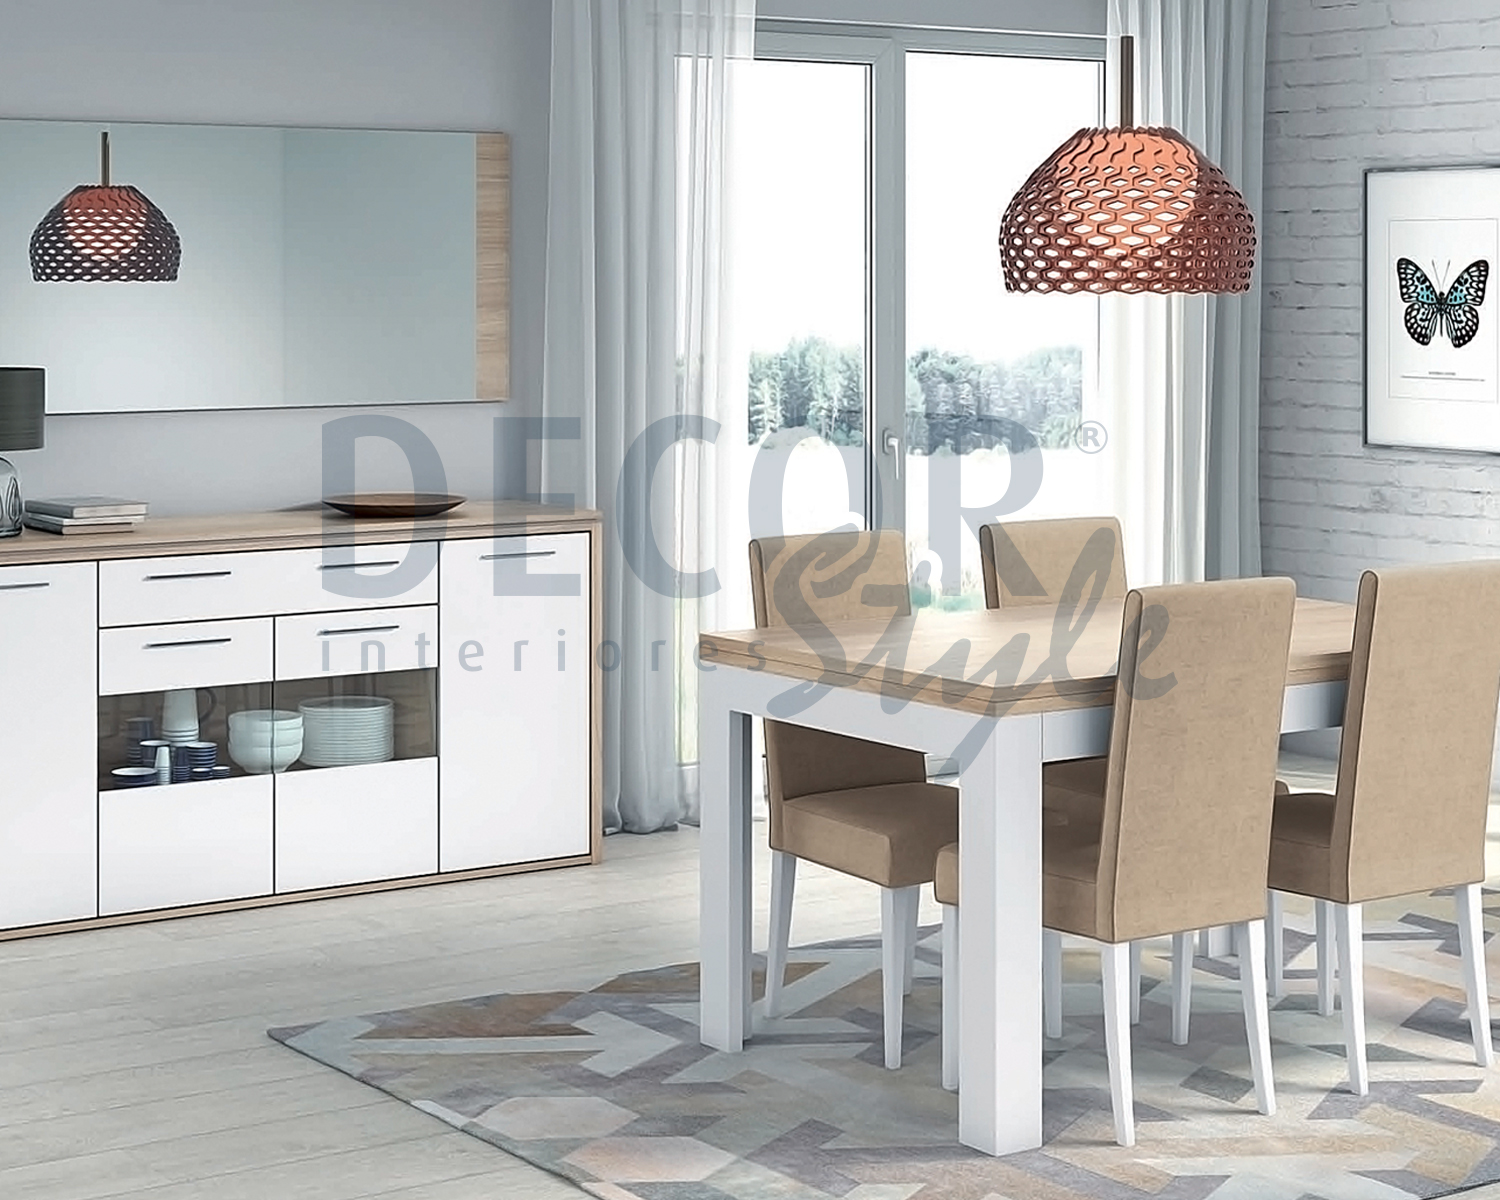 sala de jantar vasco da gama lisboa elegante moderna de linhas simples e direitas minimalista moderno e low cost